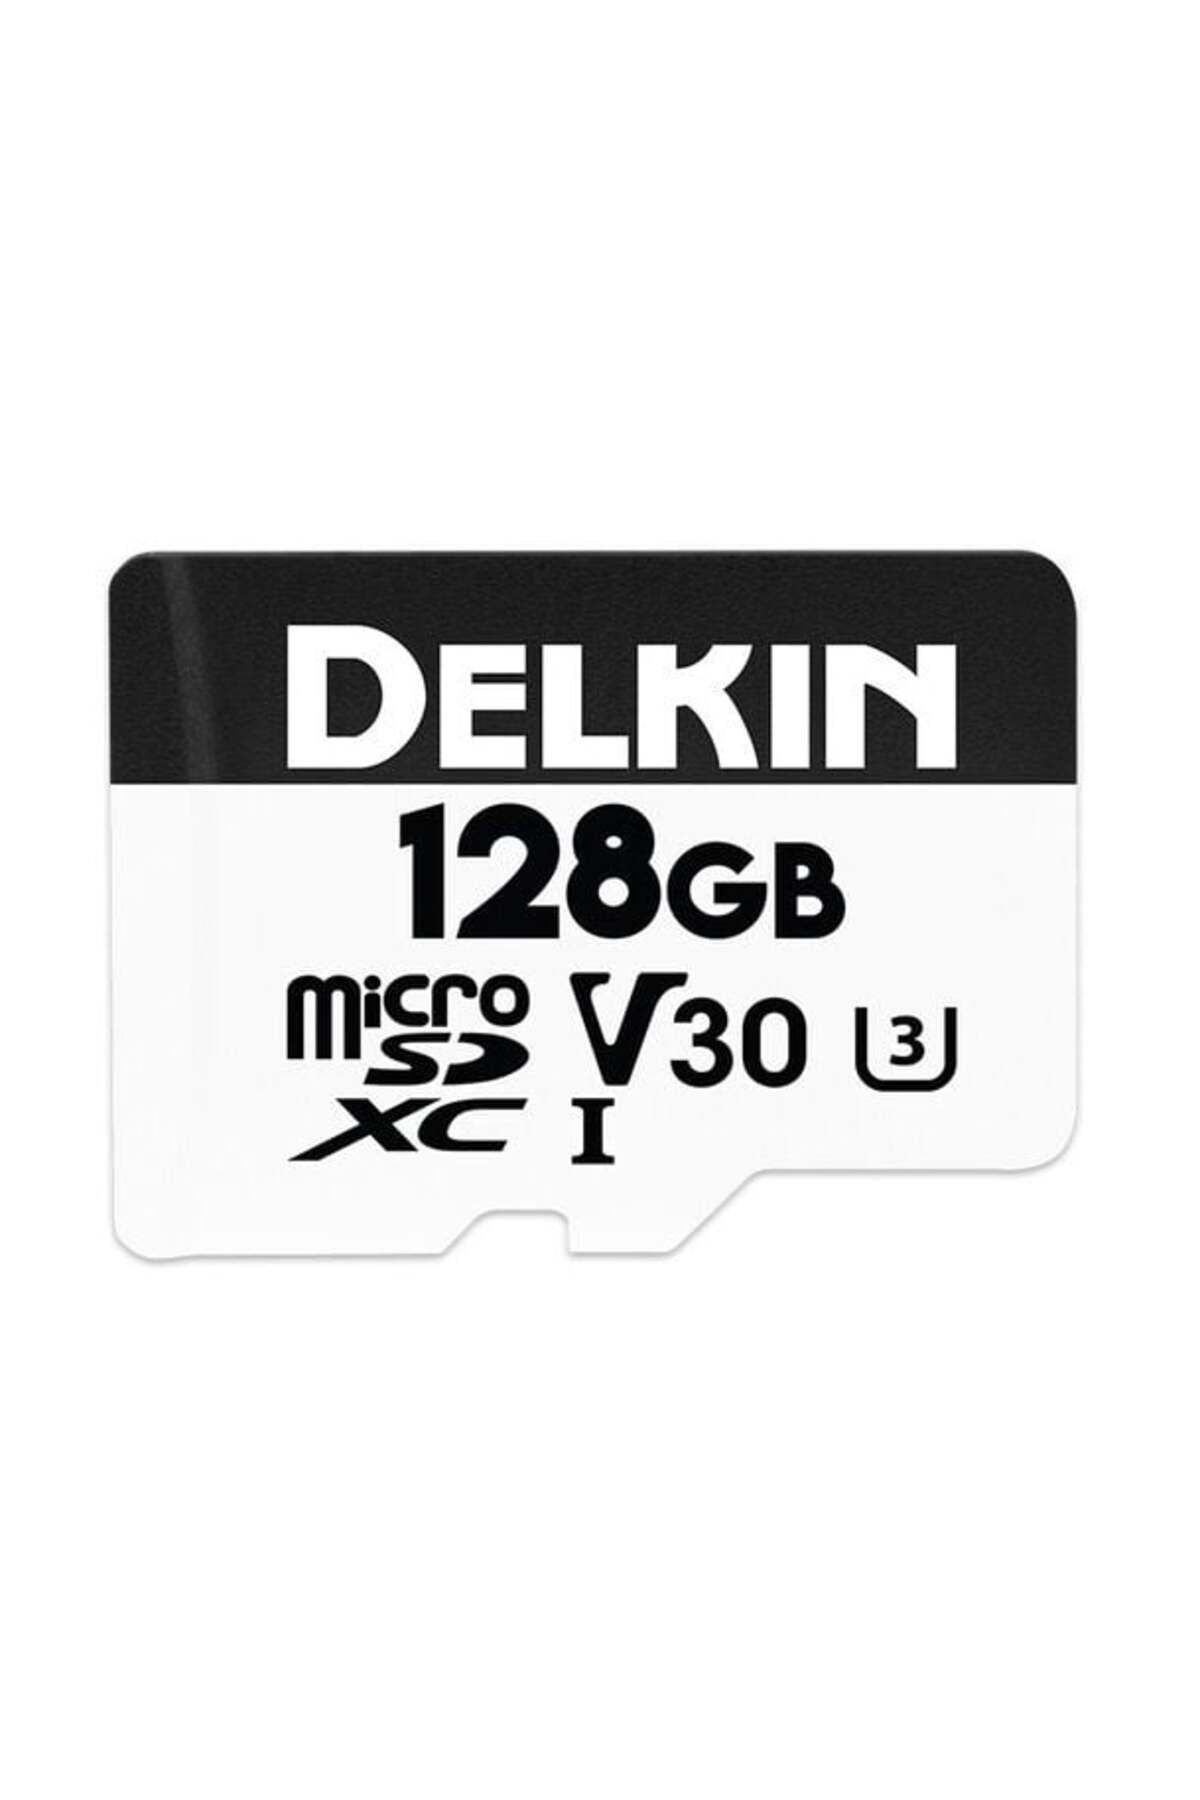 Delkin Delkin HYPERSPEED 128GB Micro SD V30 Hafıza Kartı